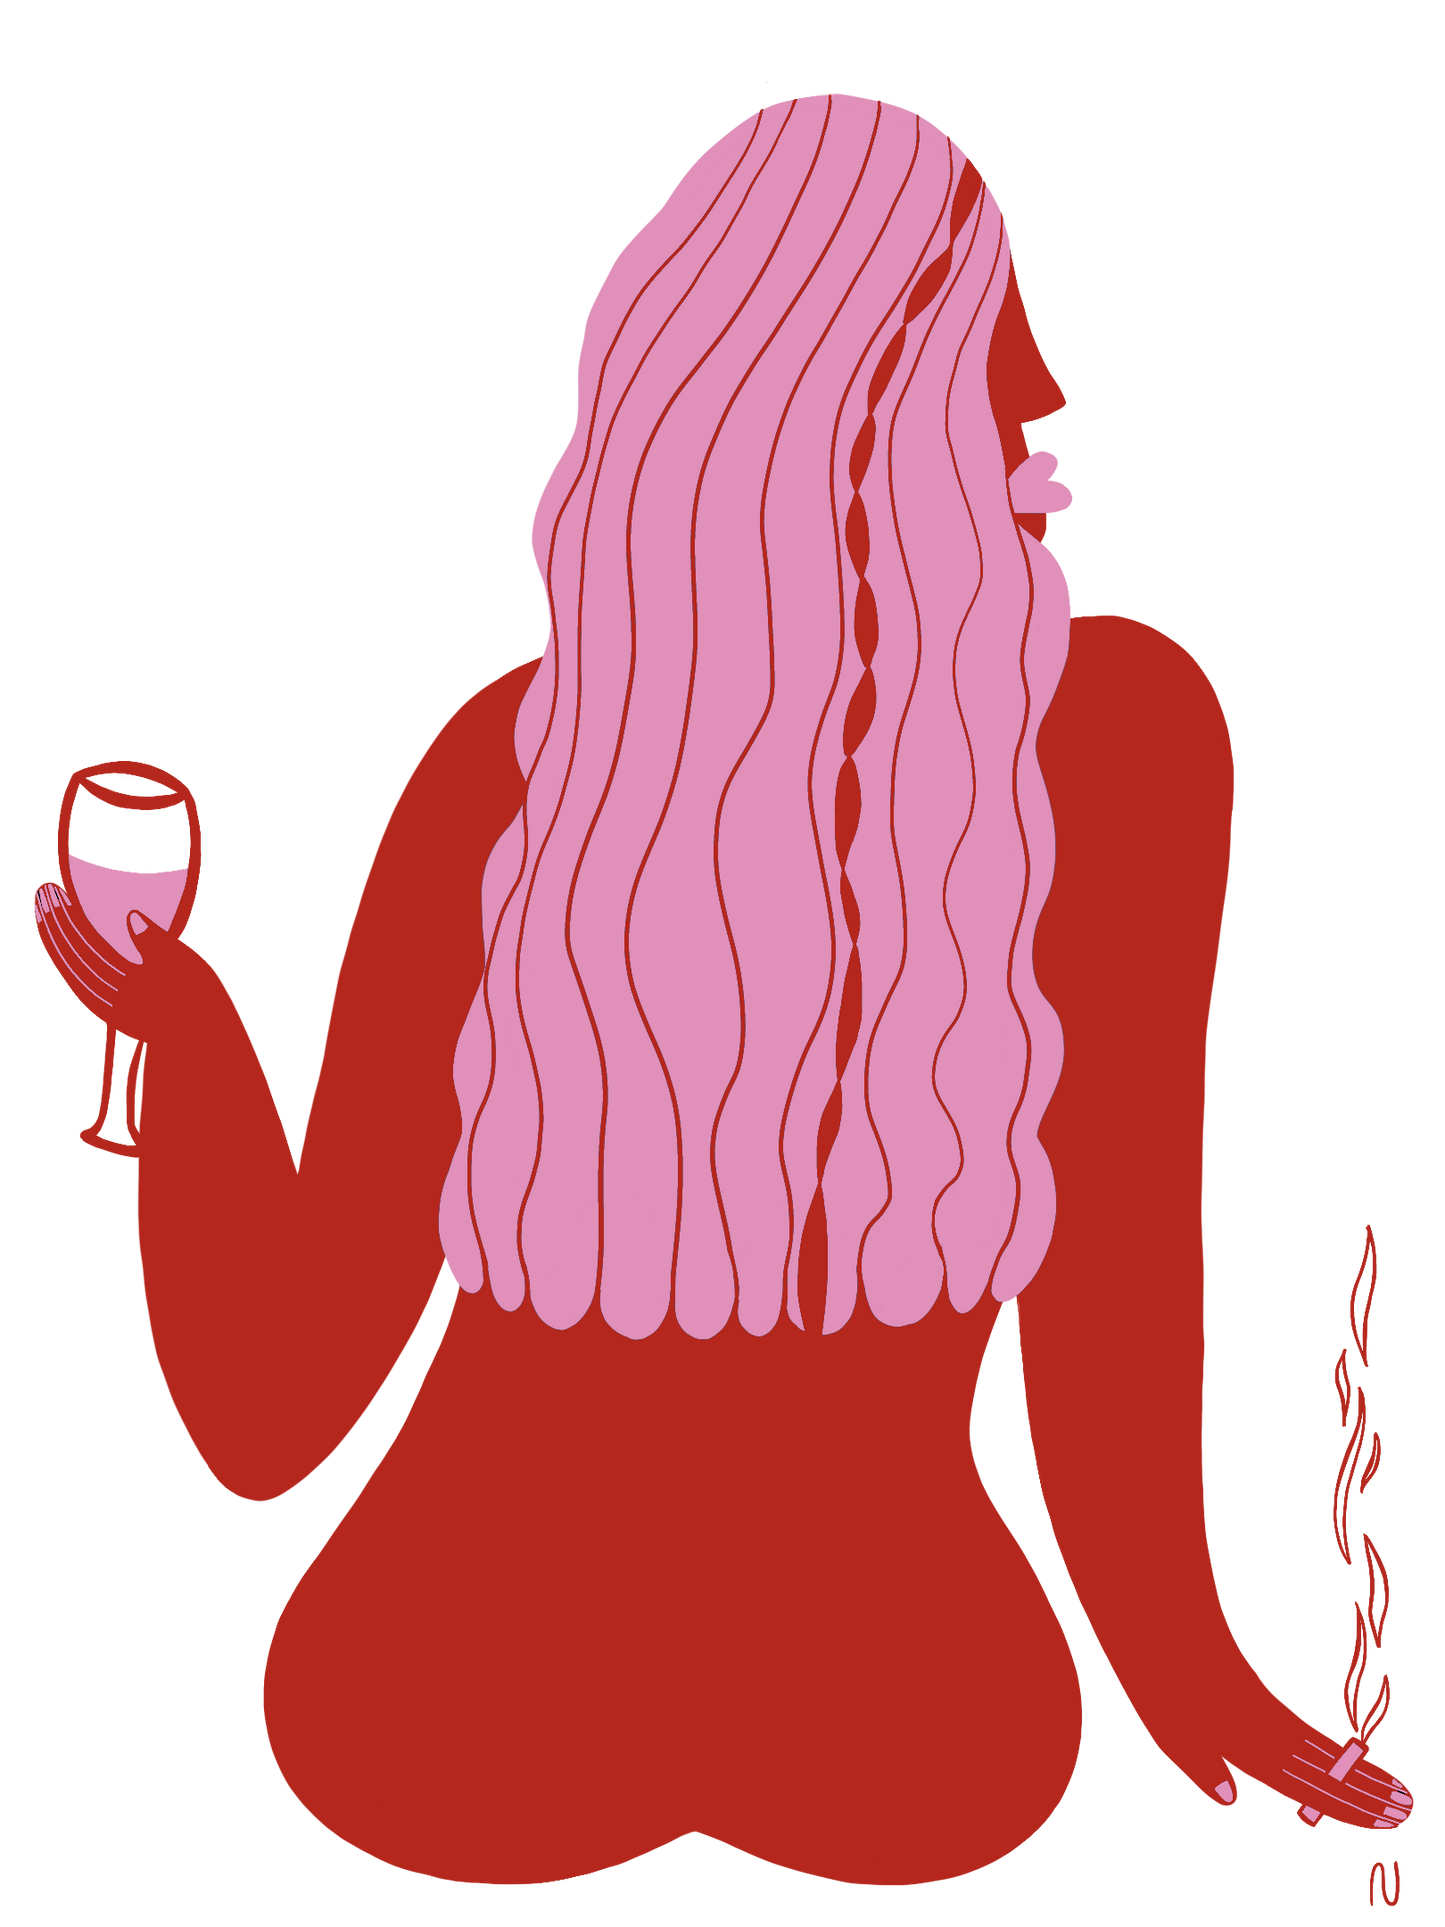 "Bad Habits" dell'artista SAYONARA. Ritrae una ragazza con lunghi capelli rosa, seduta di spalle, che tiene un calice di vino nella mano sinistra e una sigaretta nella destra. Il suo sguardo rivolto a destra aggiunge un tocco di mistero. Un'opera che celebra il piacere delle sane cattive abitudini in uno stile cartoon unico.